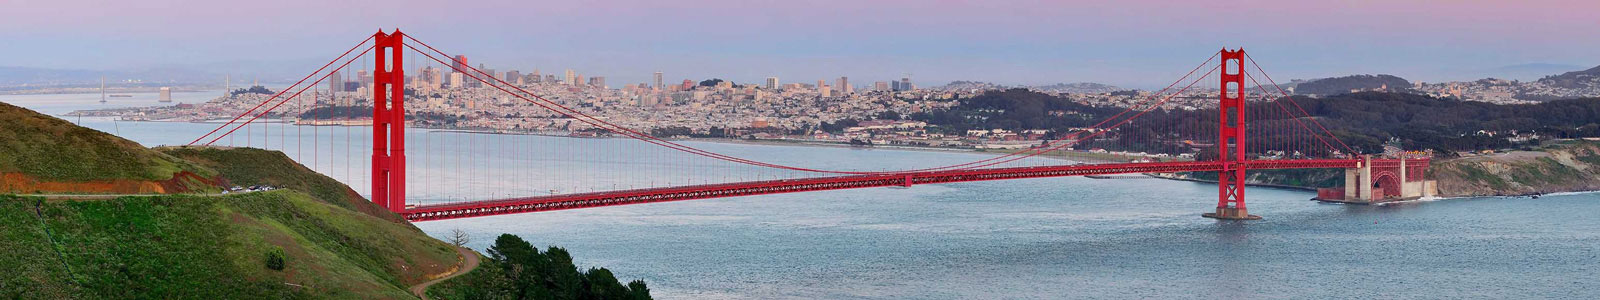 №3460 - Панорама Золотых Ворот в Сан-Франциско